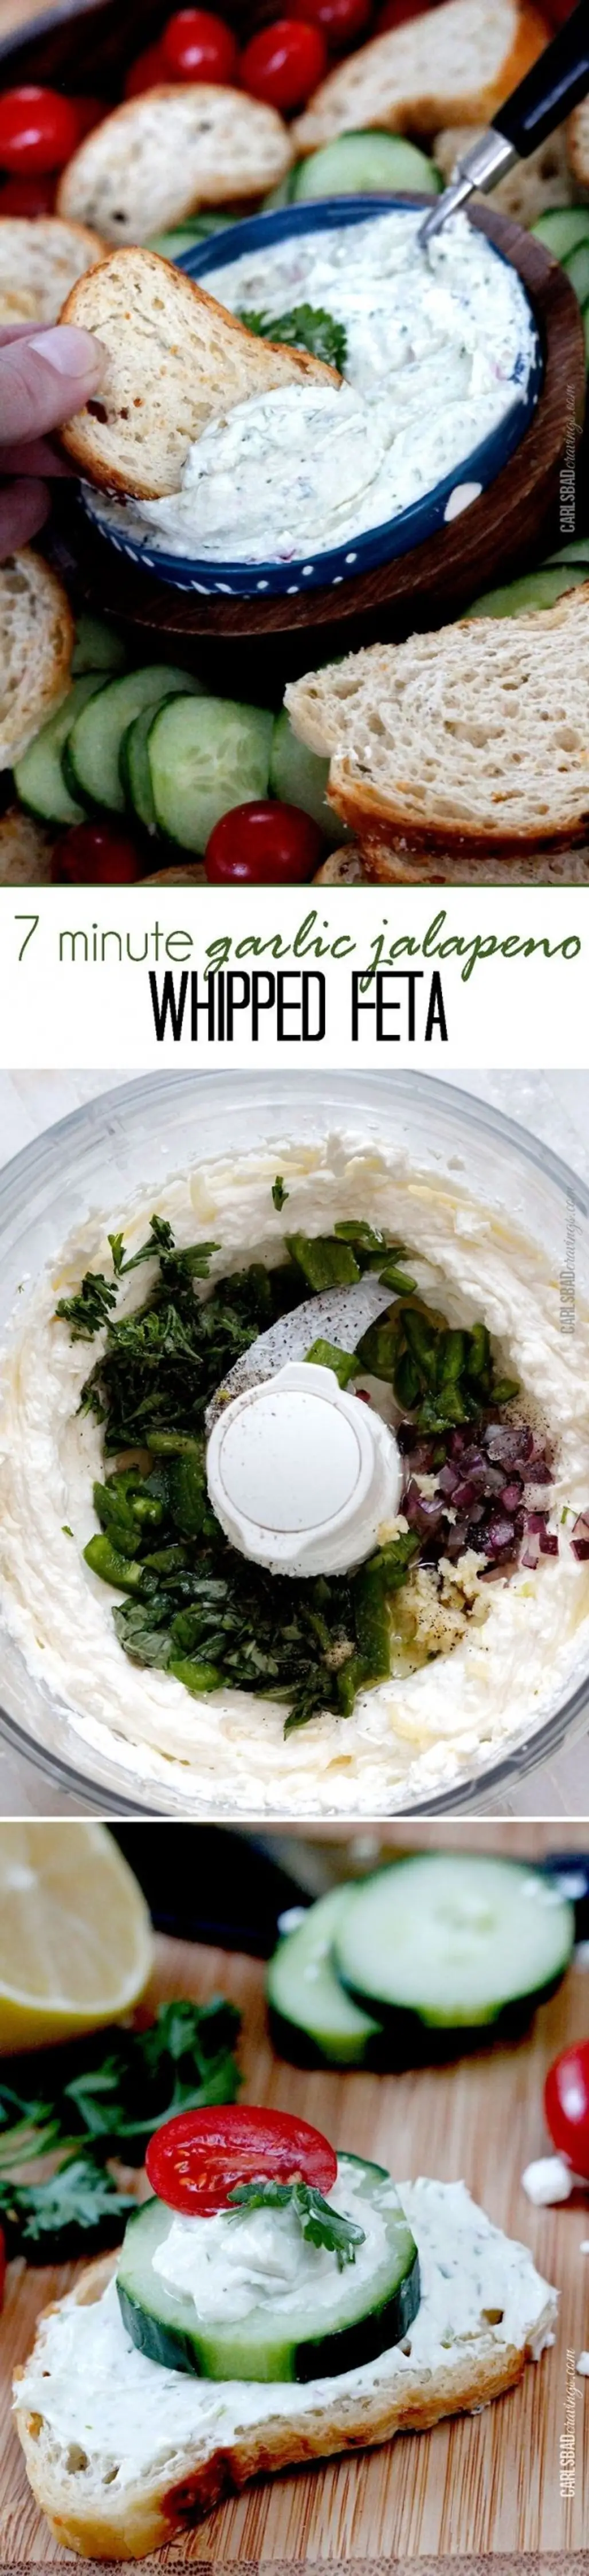 Garlic Jalapeno Whipped Feta Dip